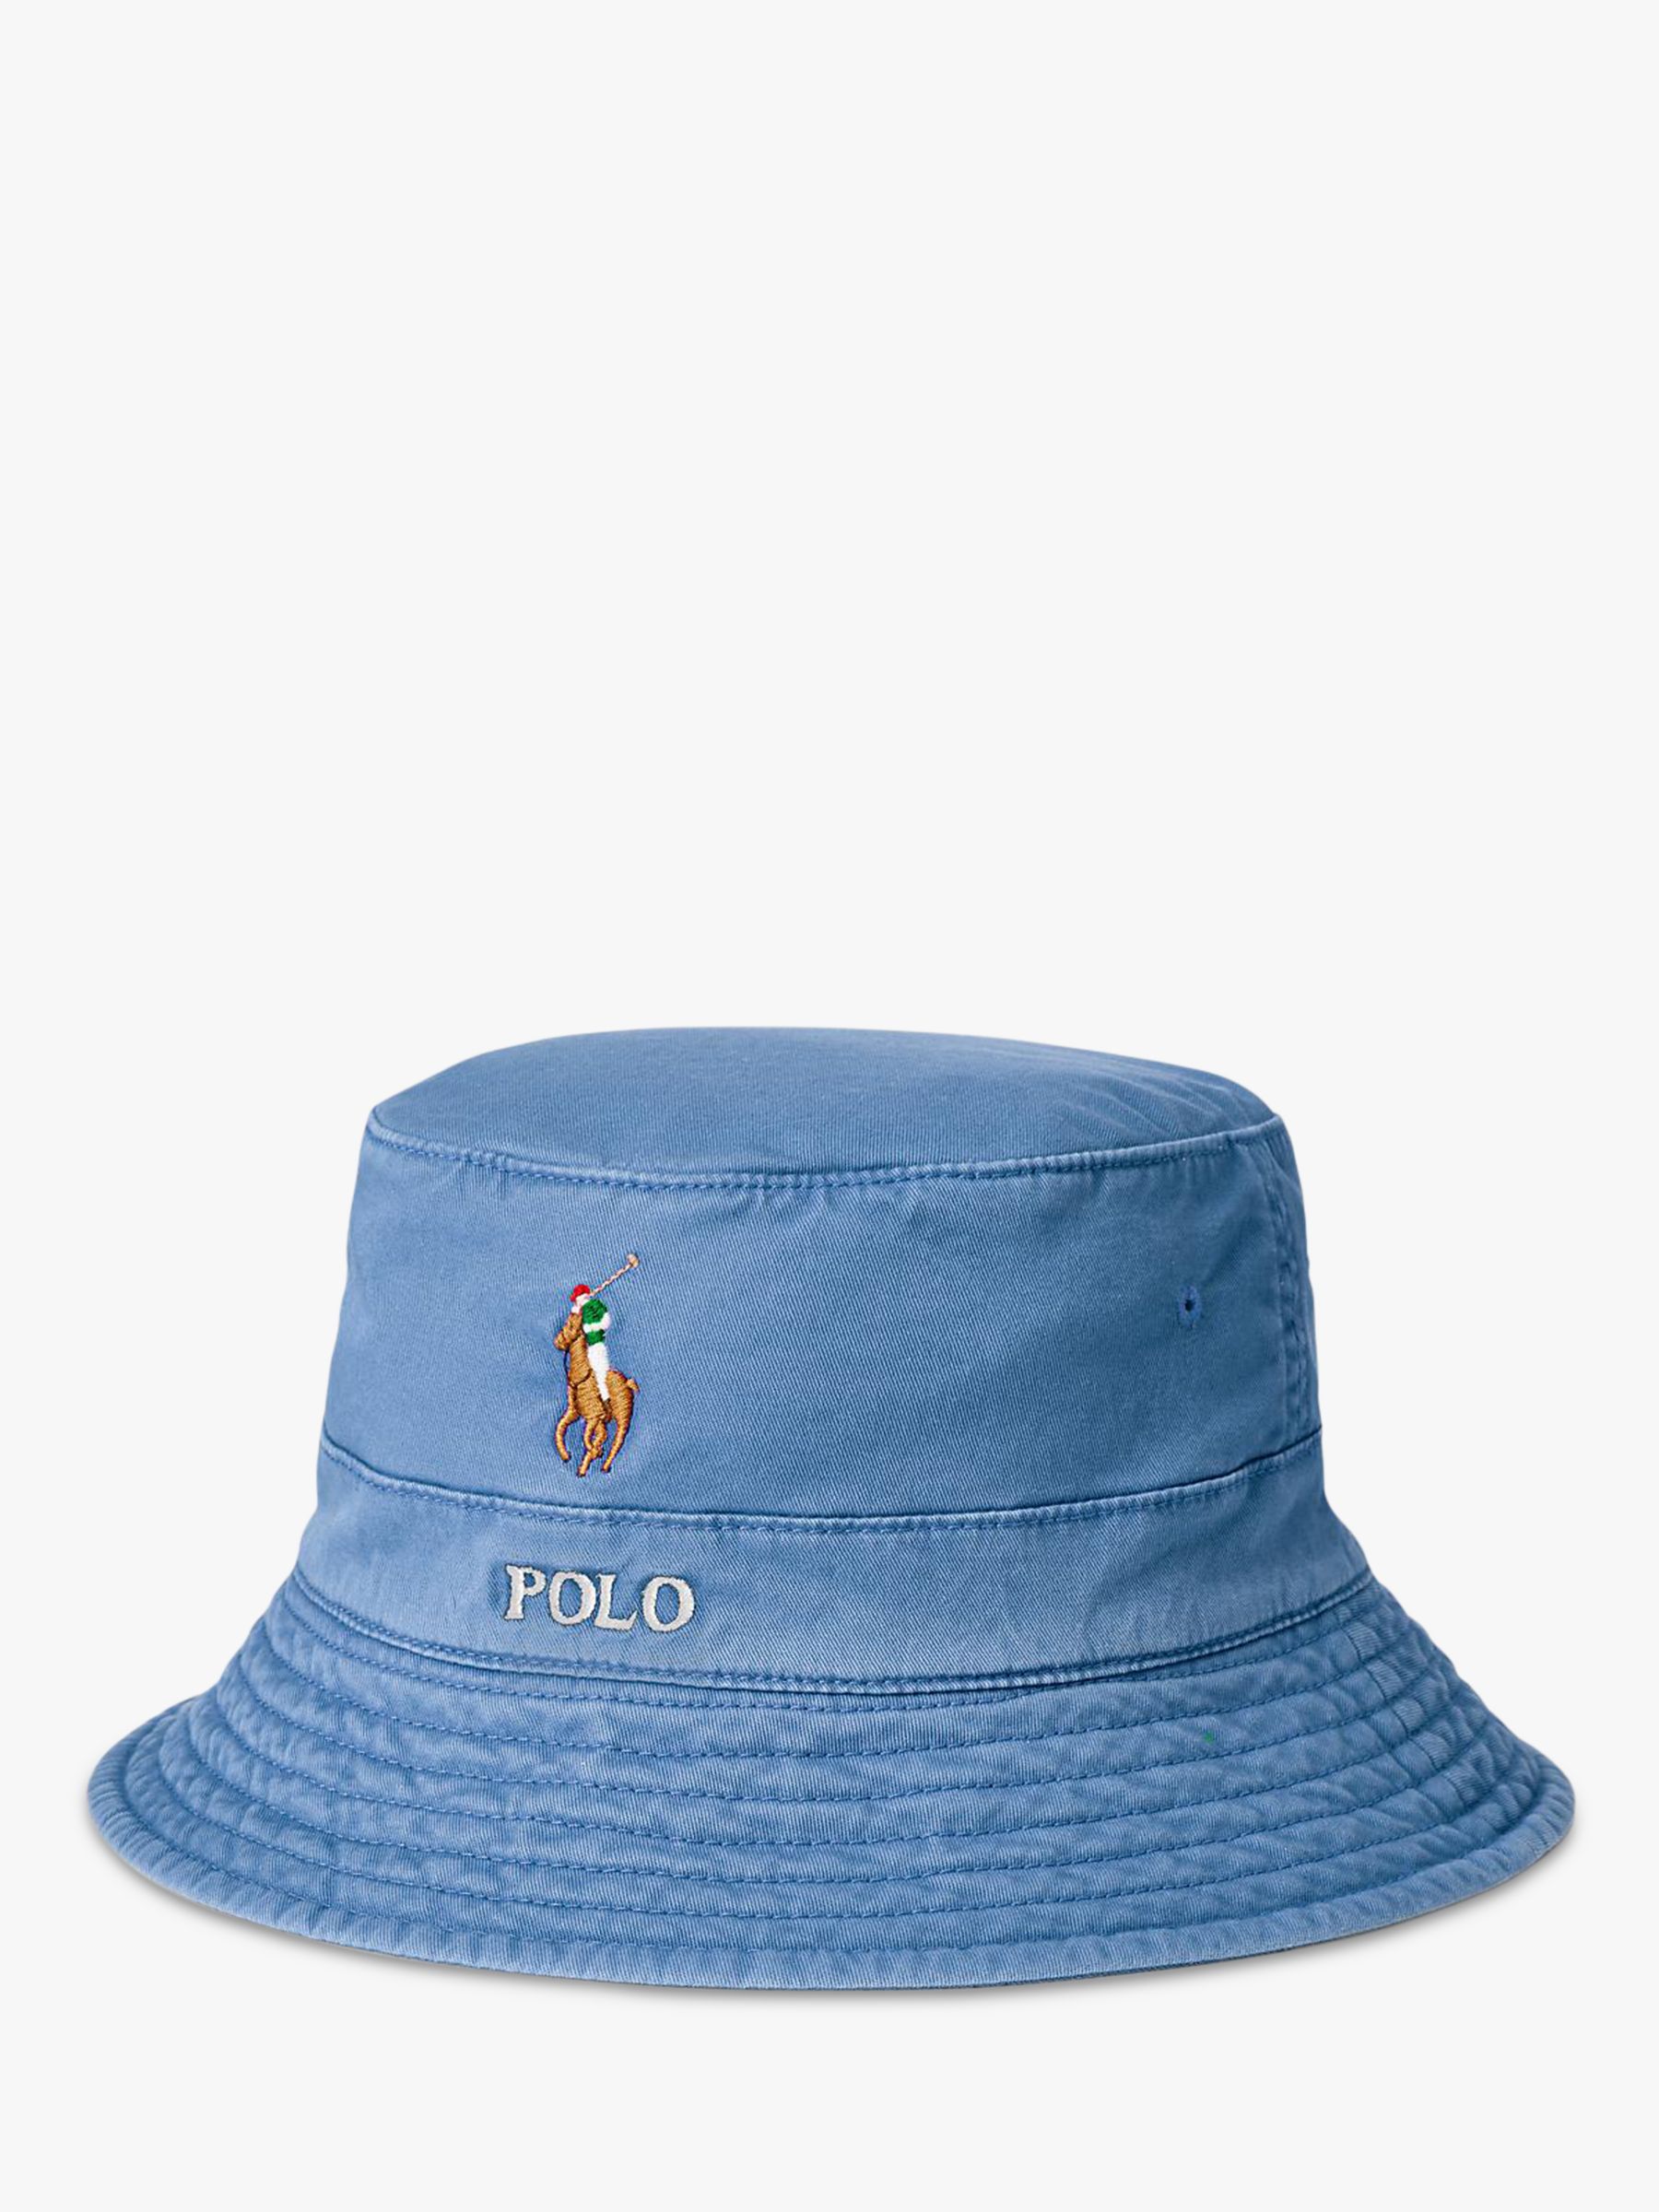 polo ralph lauren men's bucket hat